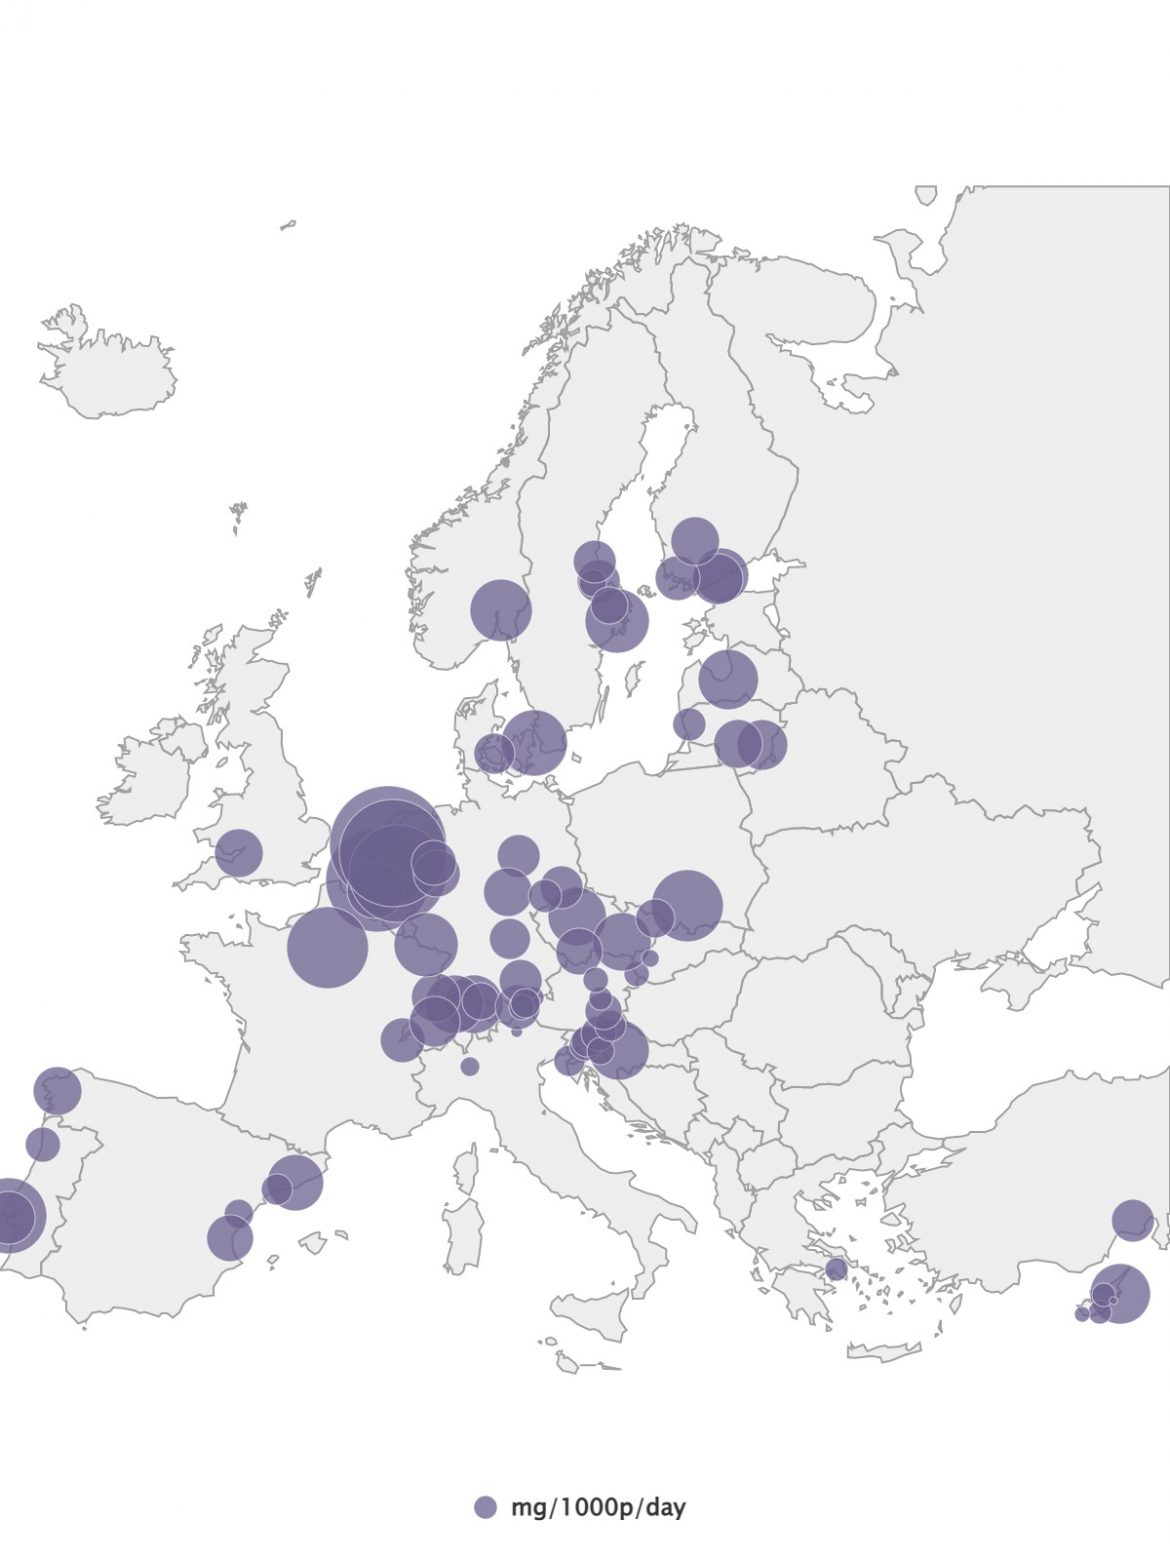 Το μέγεθος των κύκλων εκφράζει την κατανάλωση MDMA ανά πόλη. Στην Ελλάδα δείχνει χαμηλή, όπως ισχύει και για τις άλλες 4 ουσίες που εξετάστηκαν (EMCDDA)